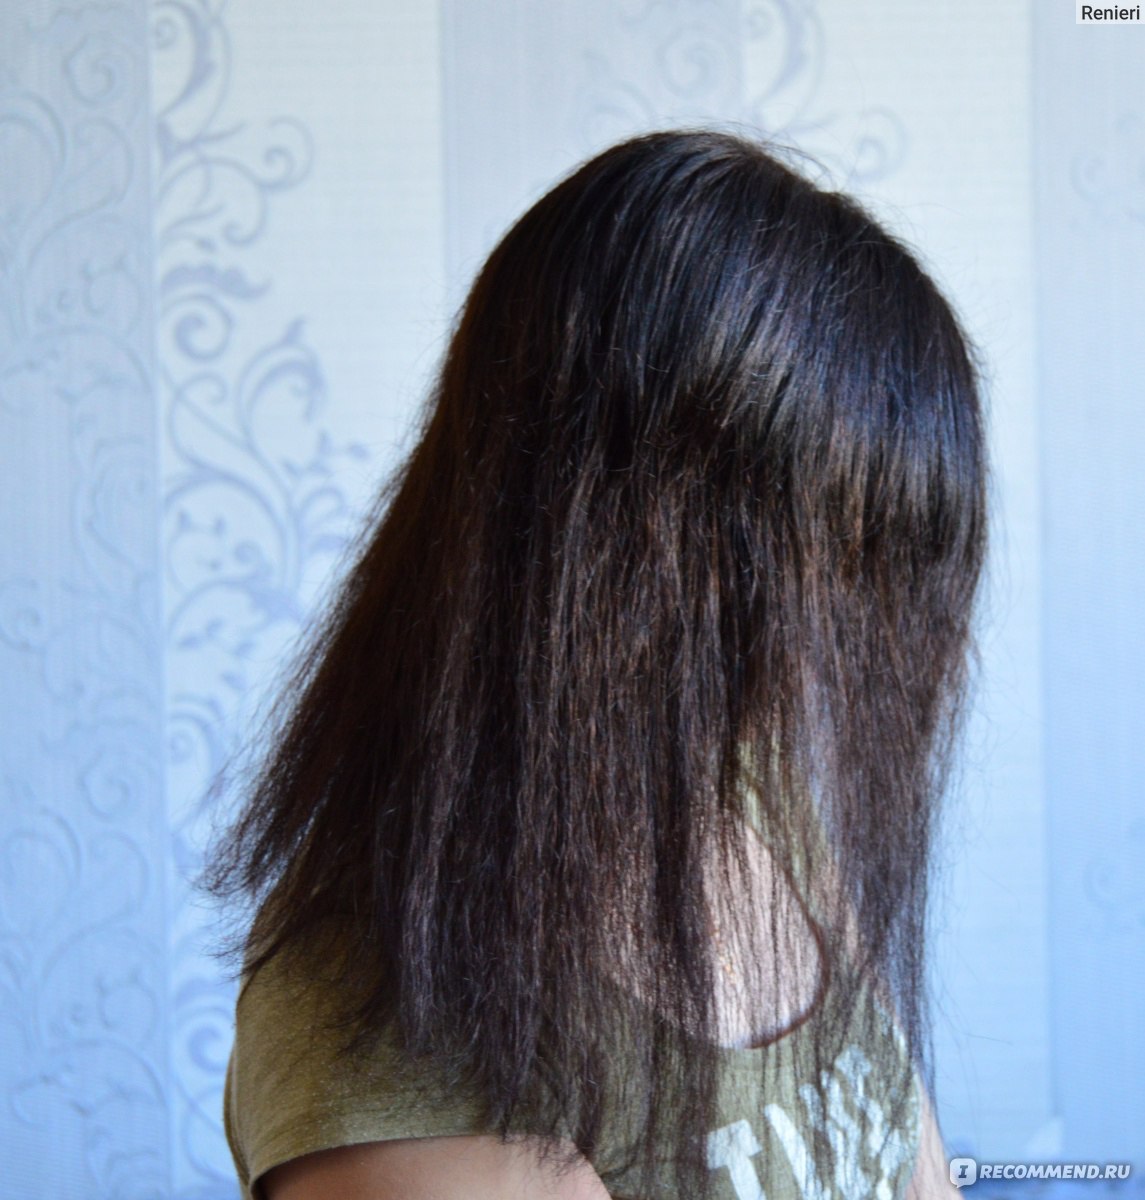 Волосы как мочалка! Помогите советом!!! — 41 ответов | форум Babyblog